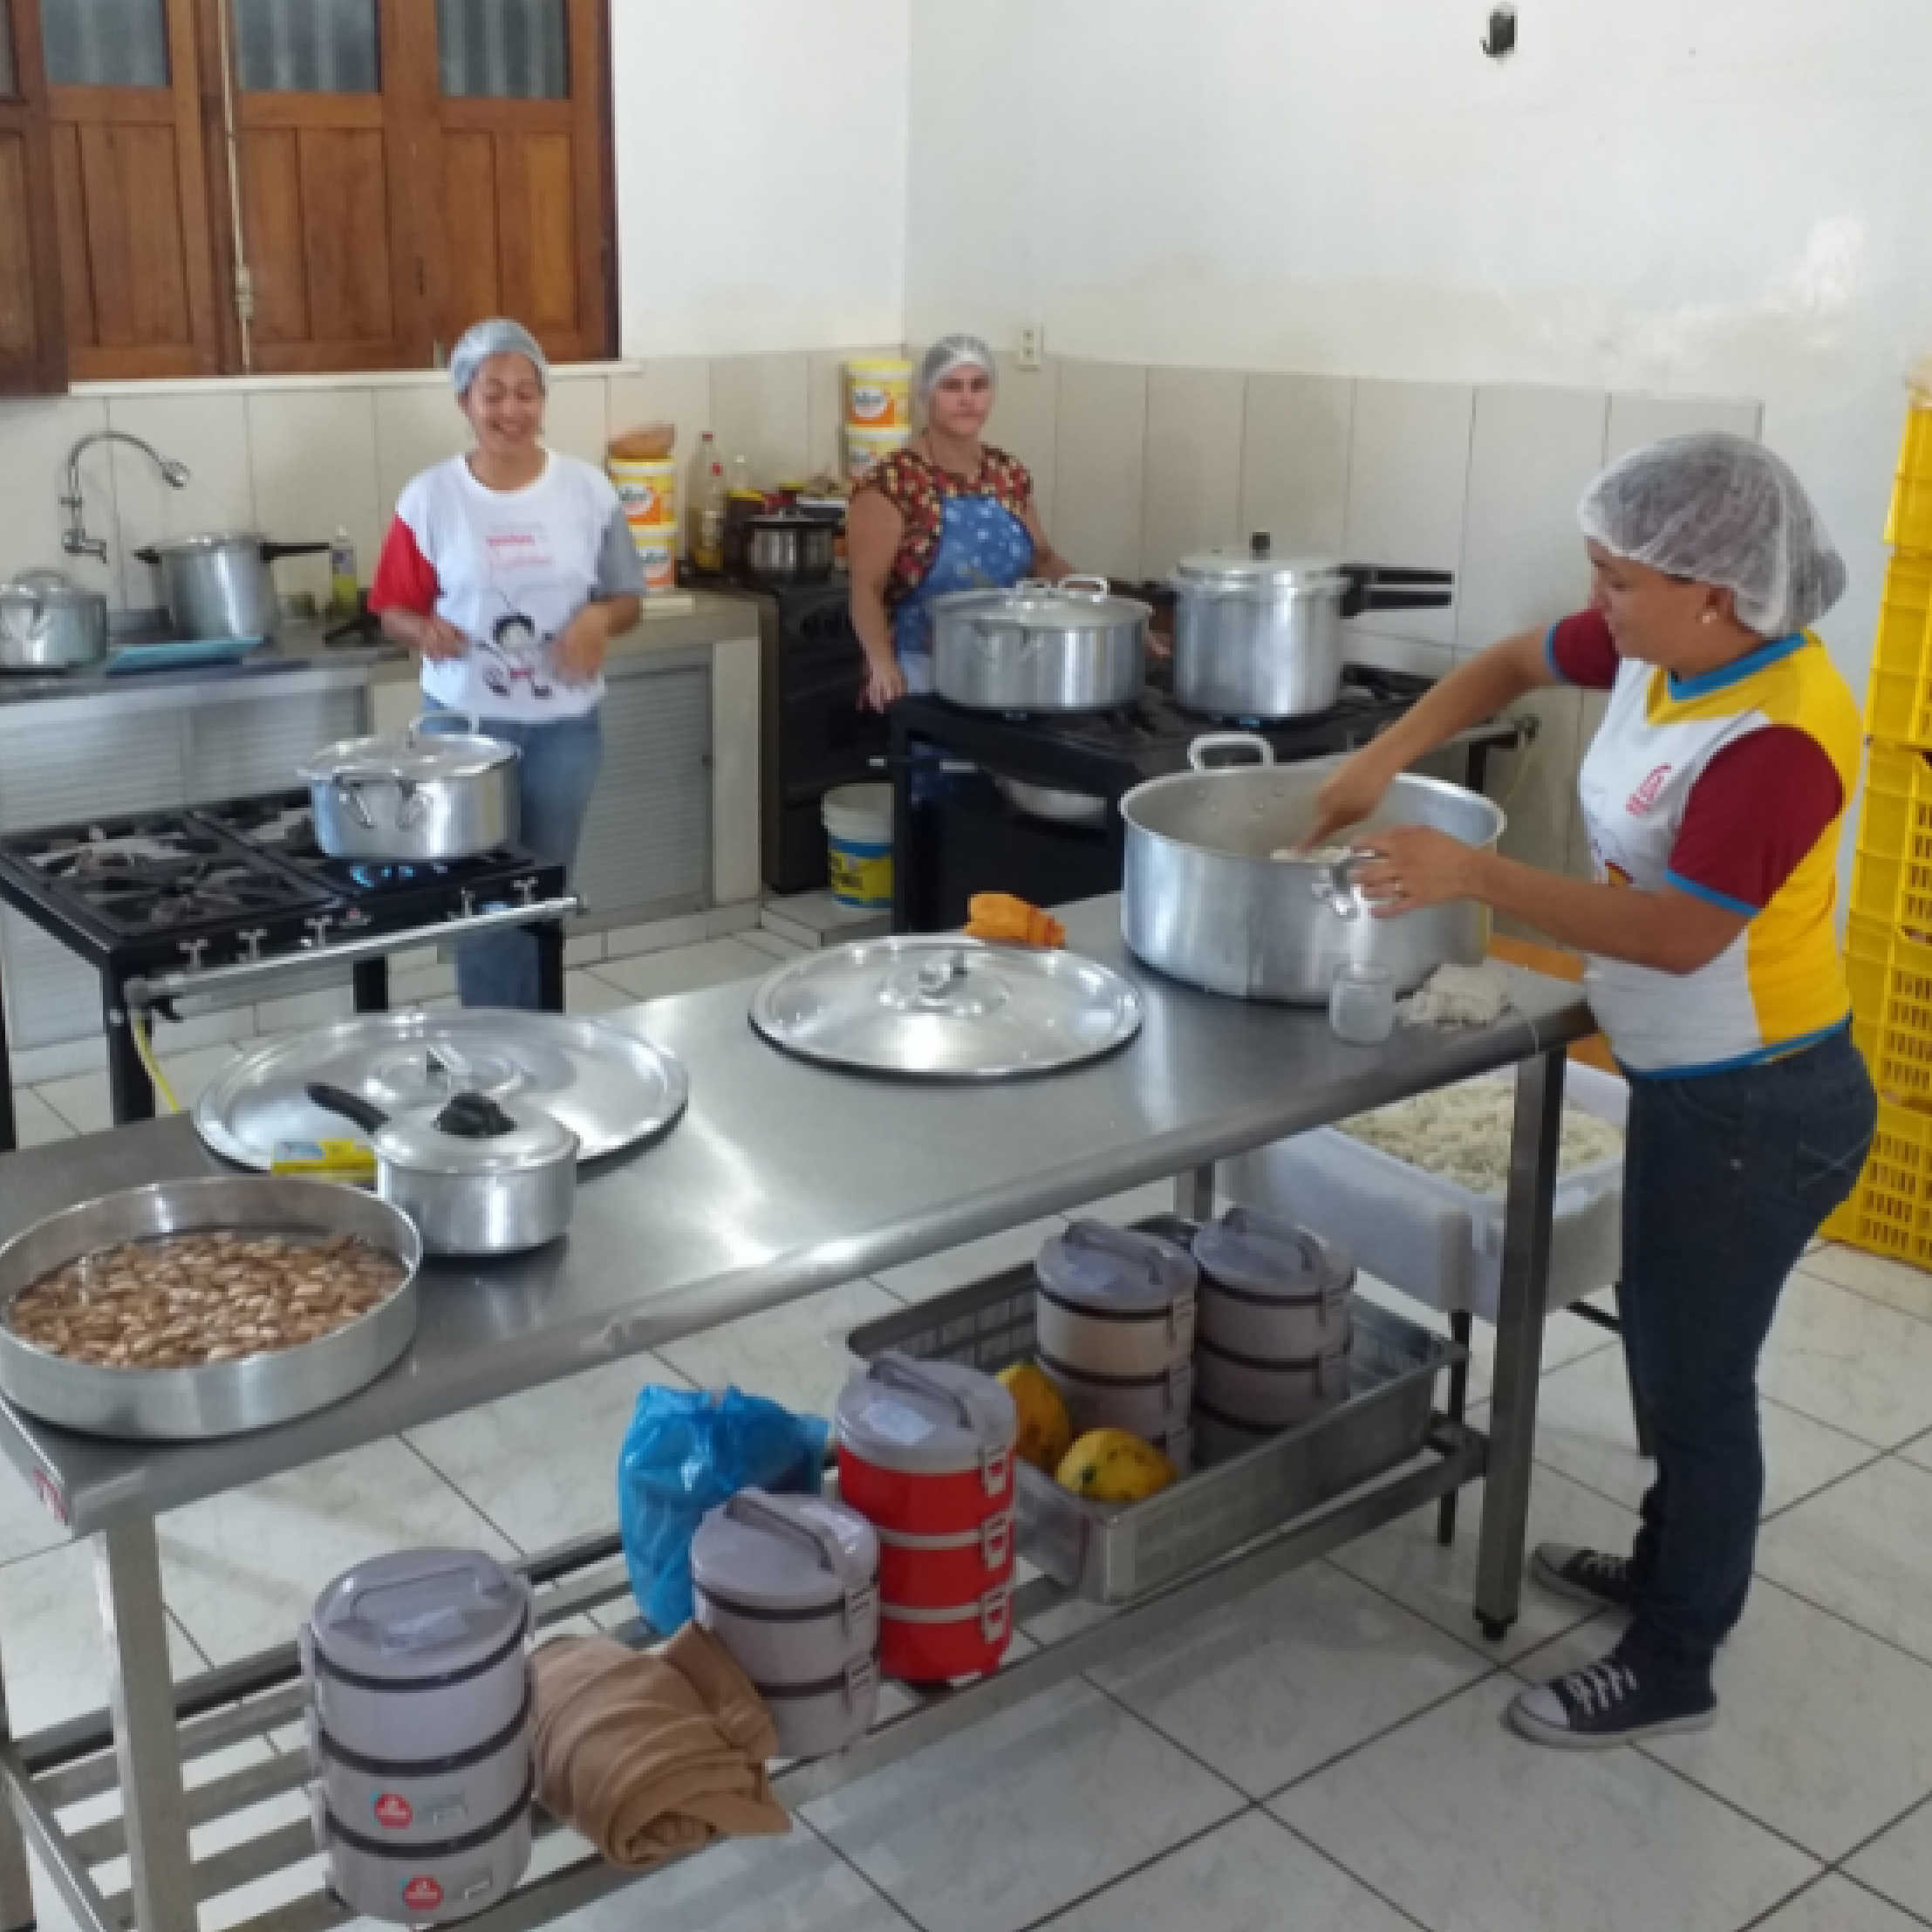 Volunteers prepare food for the Venezuelan families.